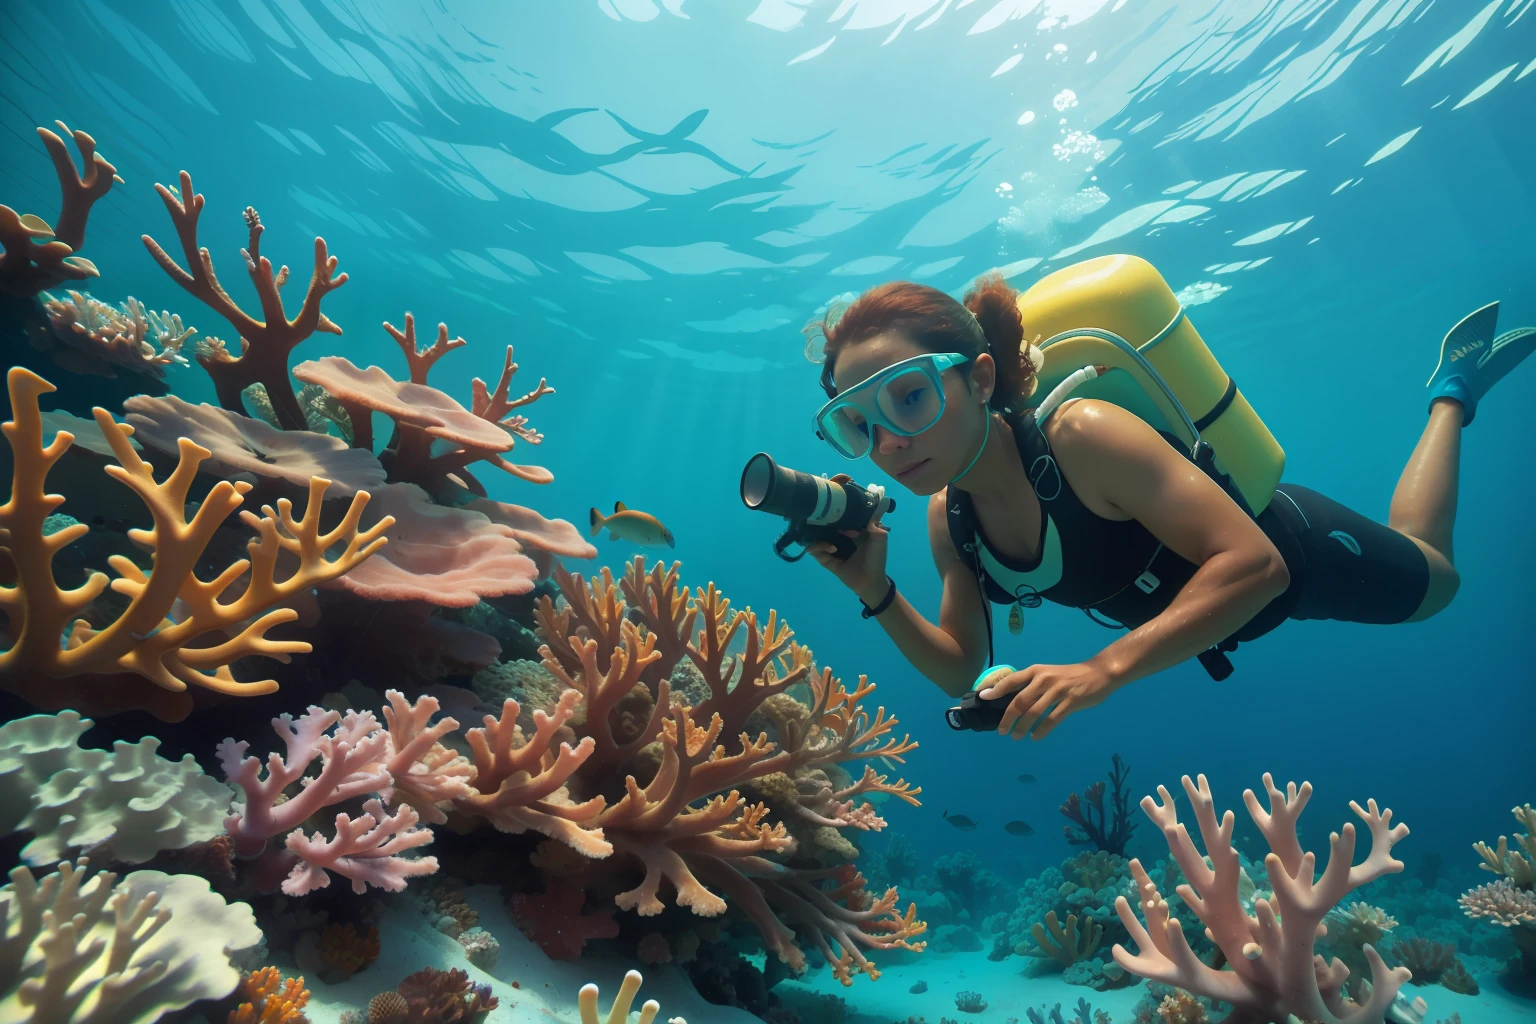 дата: 2013 Страна: Описание Багамских островов: Взрослый багамский морской биолог тщательно изучает яркие коралловые рифы под водой, добавление в атмосферу элемента бережного отношения к окружающей среде.